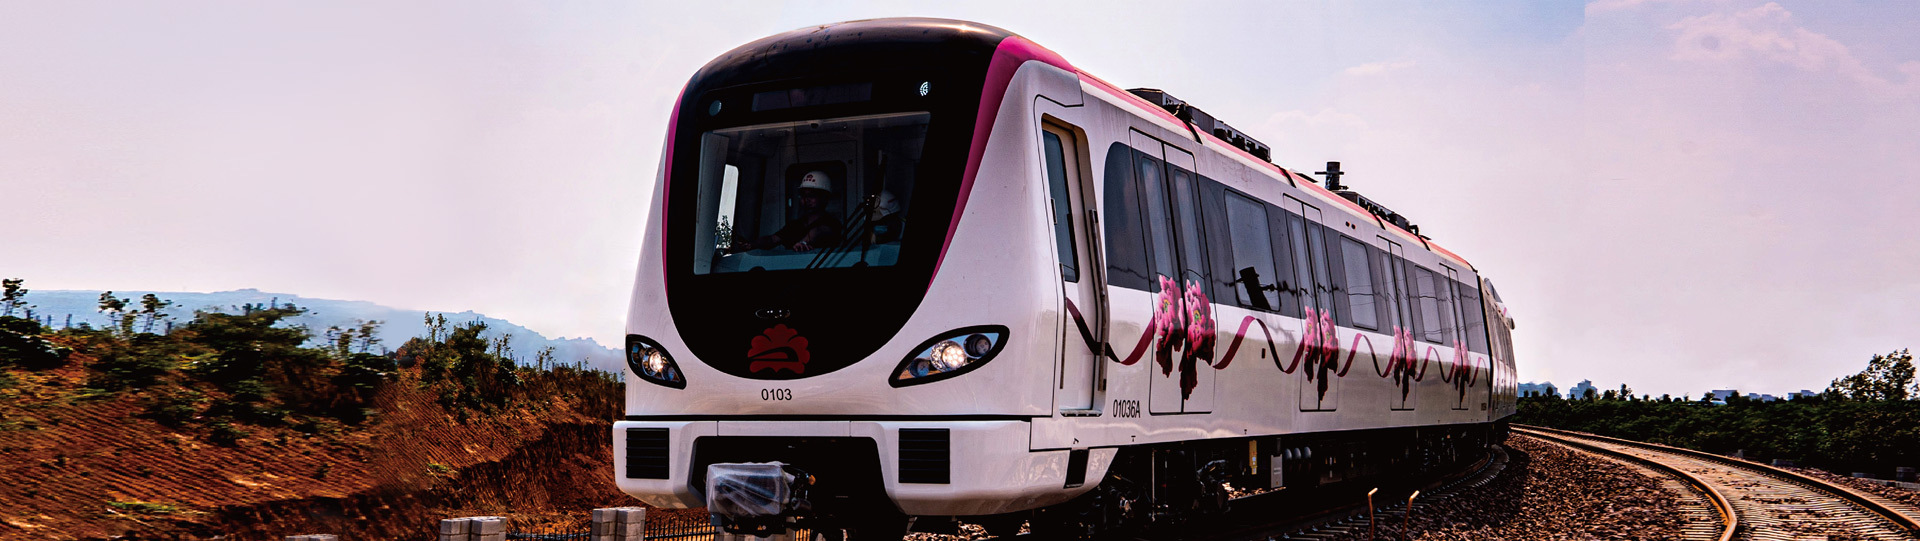 洛阳进入地铁时代 地铁1号线将于3月28日开通运营